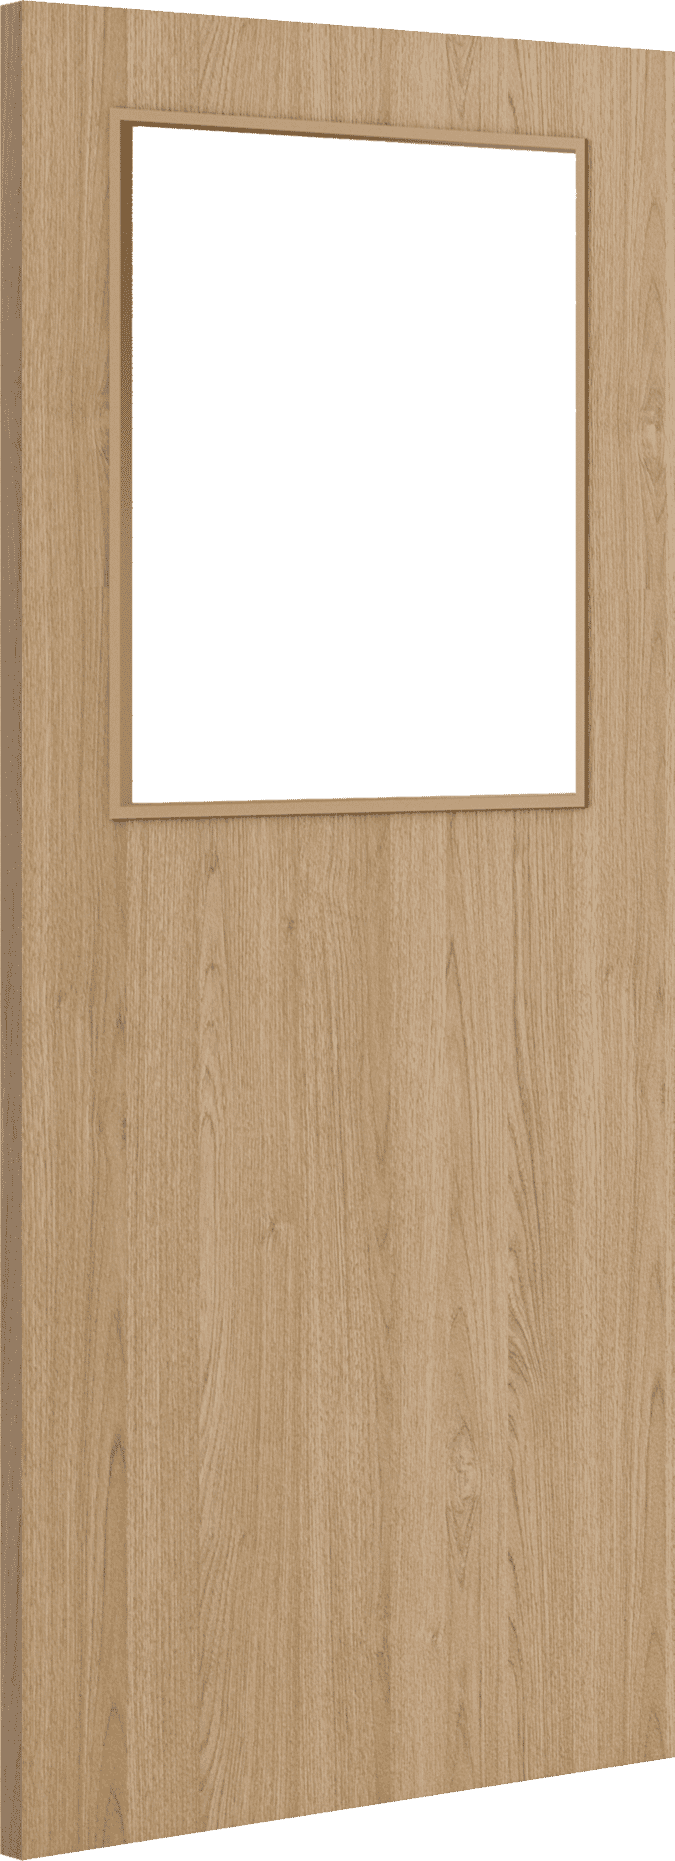 2040mm x 926mm x 44mm Architectural Oak 01 Clear Glazed - Prefinished FD30 Fire Door Blank